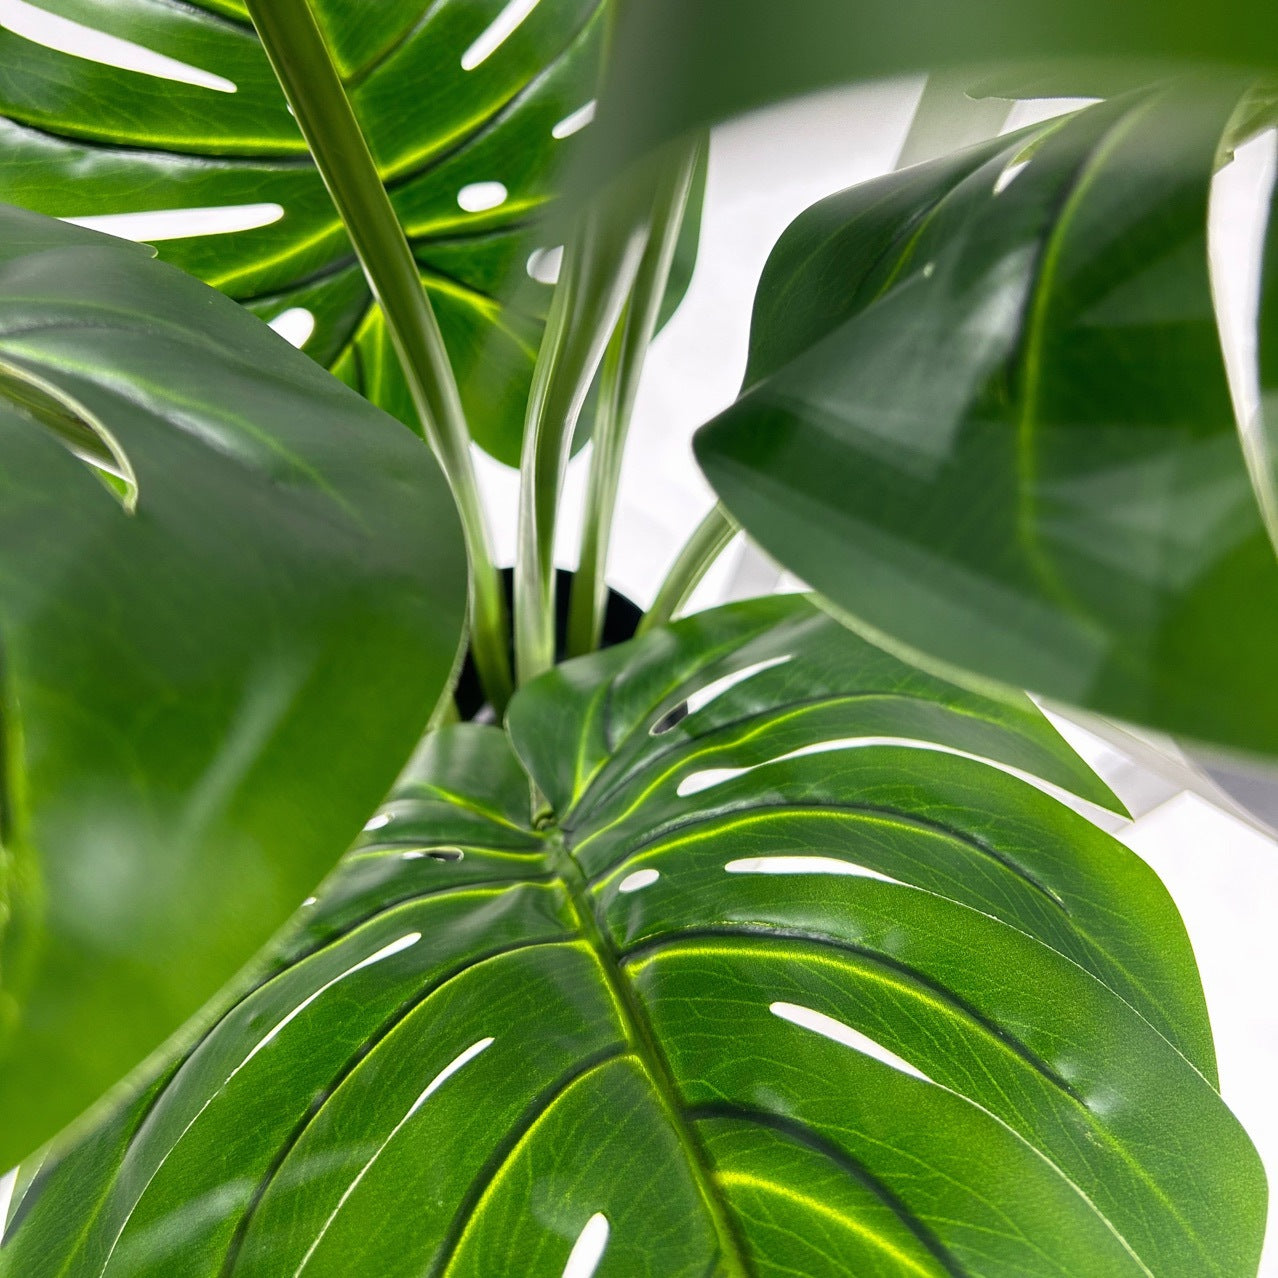 Имитированное растение, поддержанное черепахой, бамбуковое растение от пола до пола в горшке в гостиной